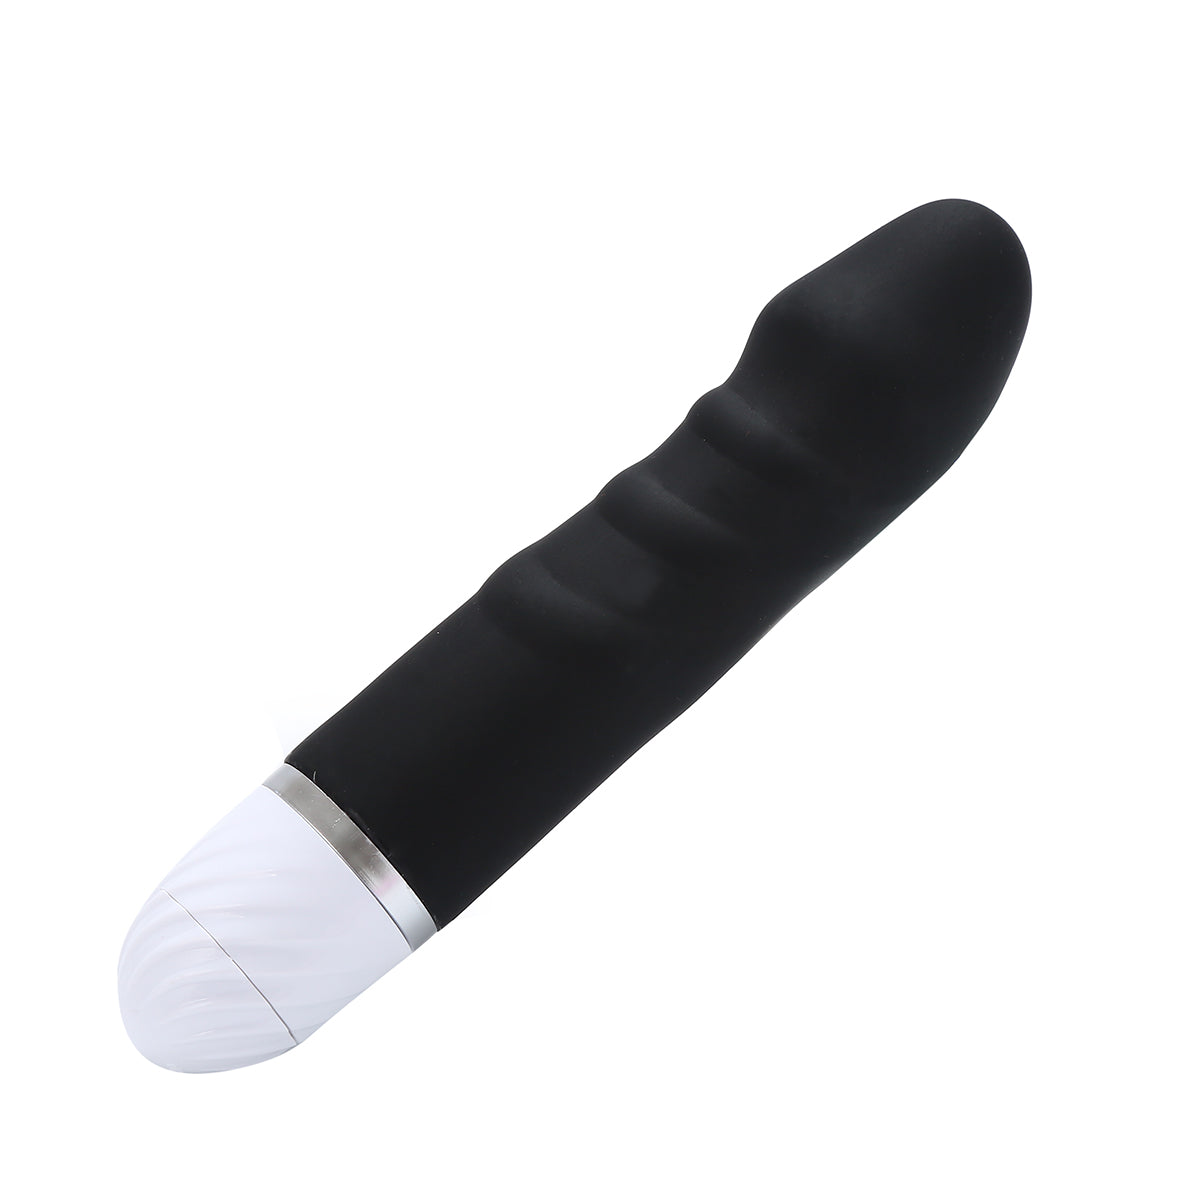  Silicone Dildo Vibrator For Female